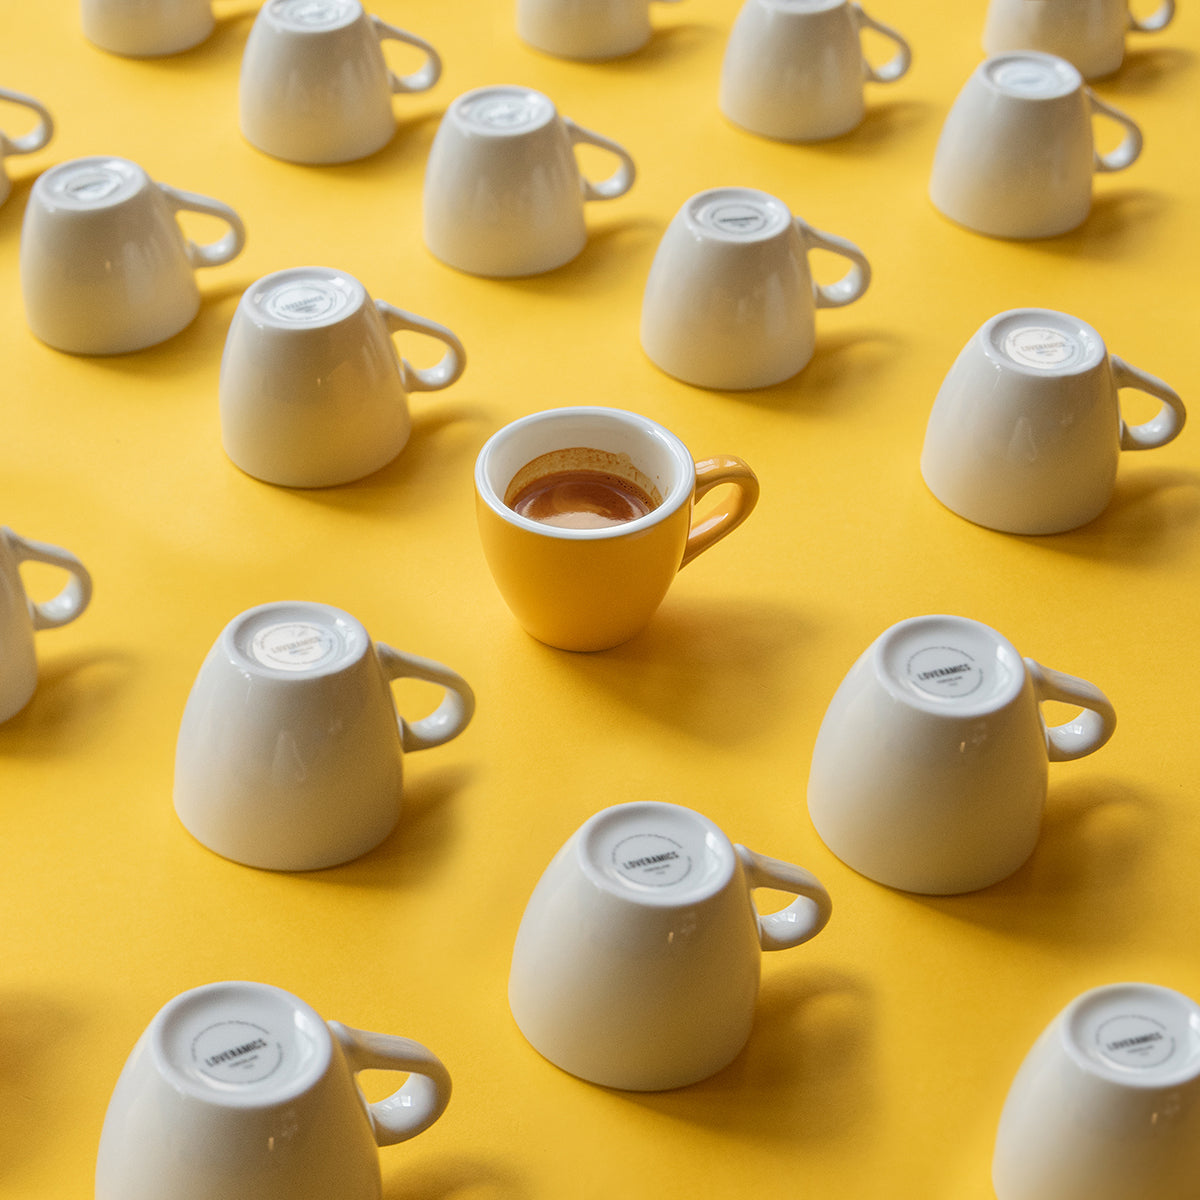 Loveramics Egg Espresso Cup (Yellow) 80ml